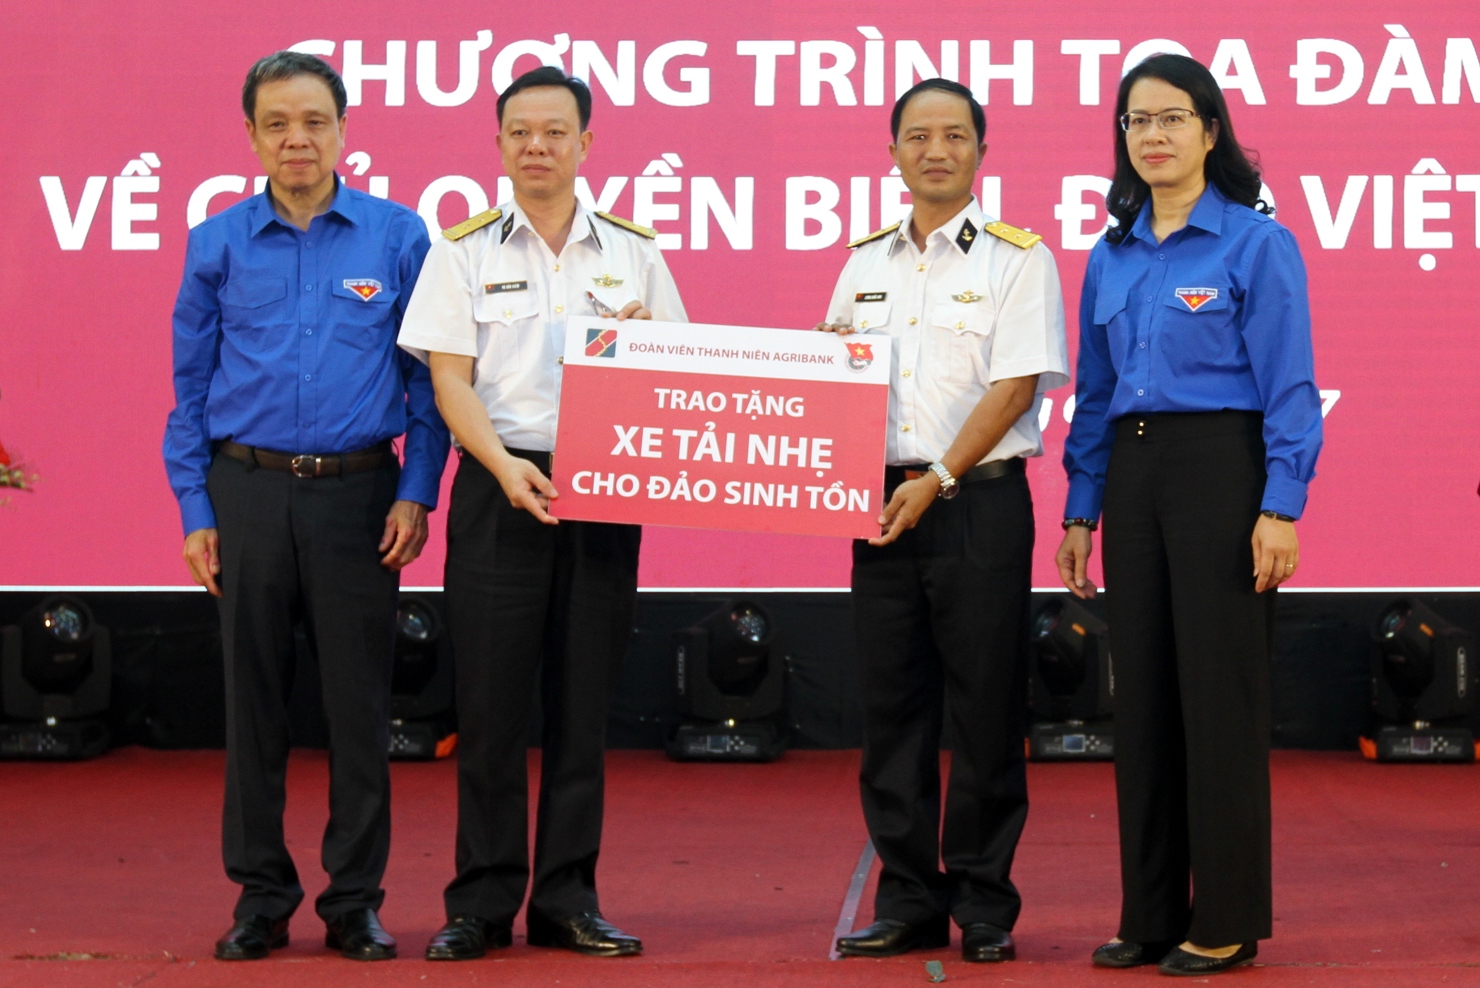 Đại diện Ban lãnh đạo Agribank, đồng chí Nguyễn Thị Phượng - Phó Tổng giám đốc trao tặng xã đảo Sinh Tồn, huyện đảo Trường Sa 1 chiếc xe tải trị giá 700 triệu đồng.